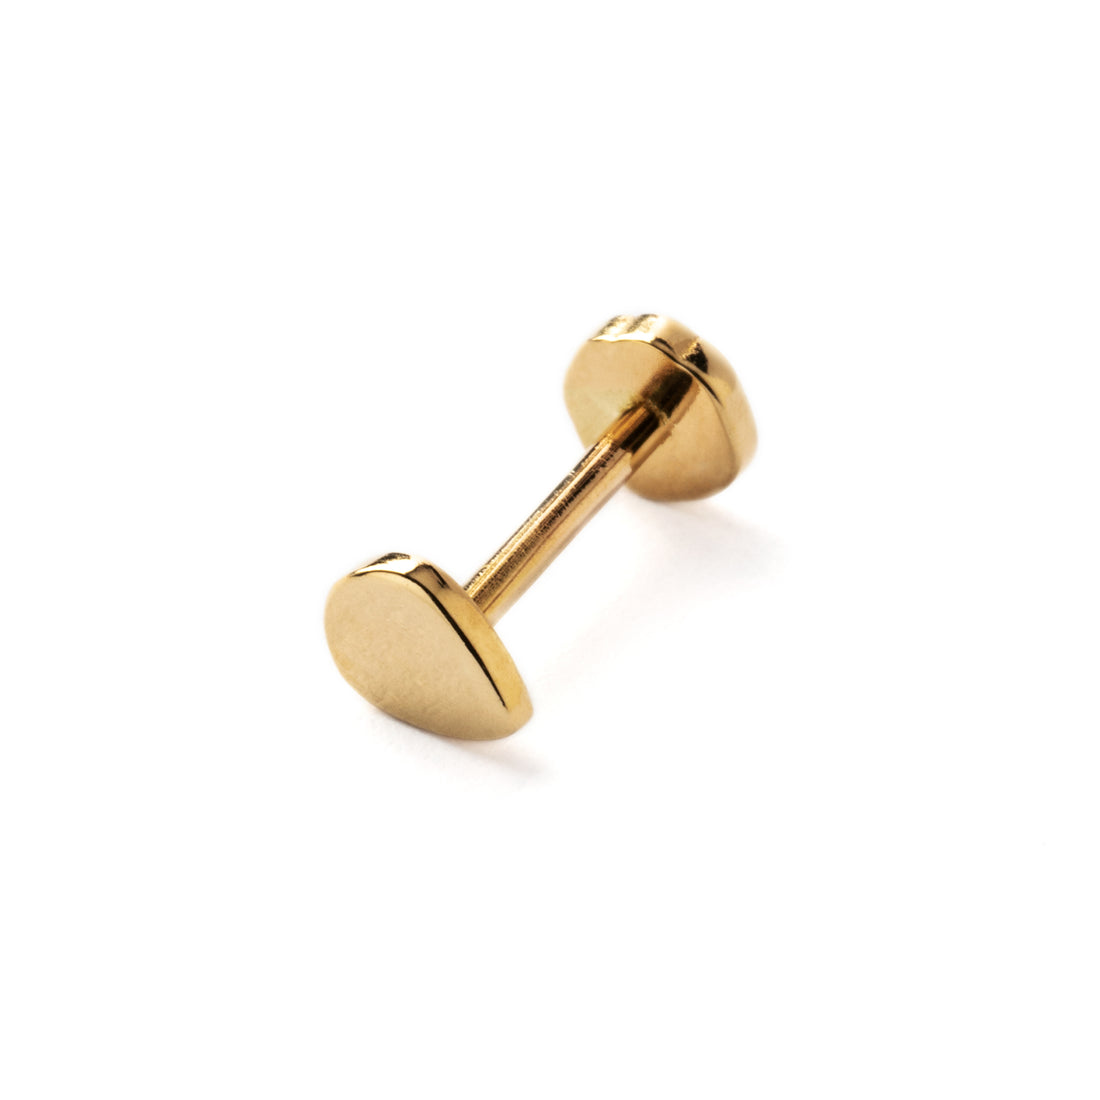 14k Gold internally threaded screw back earring 1.2mm (16g), 8mm, teardrop labret stud right side view